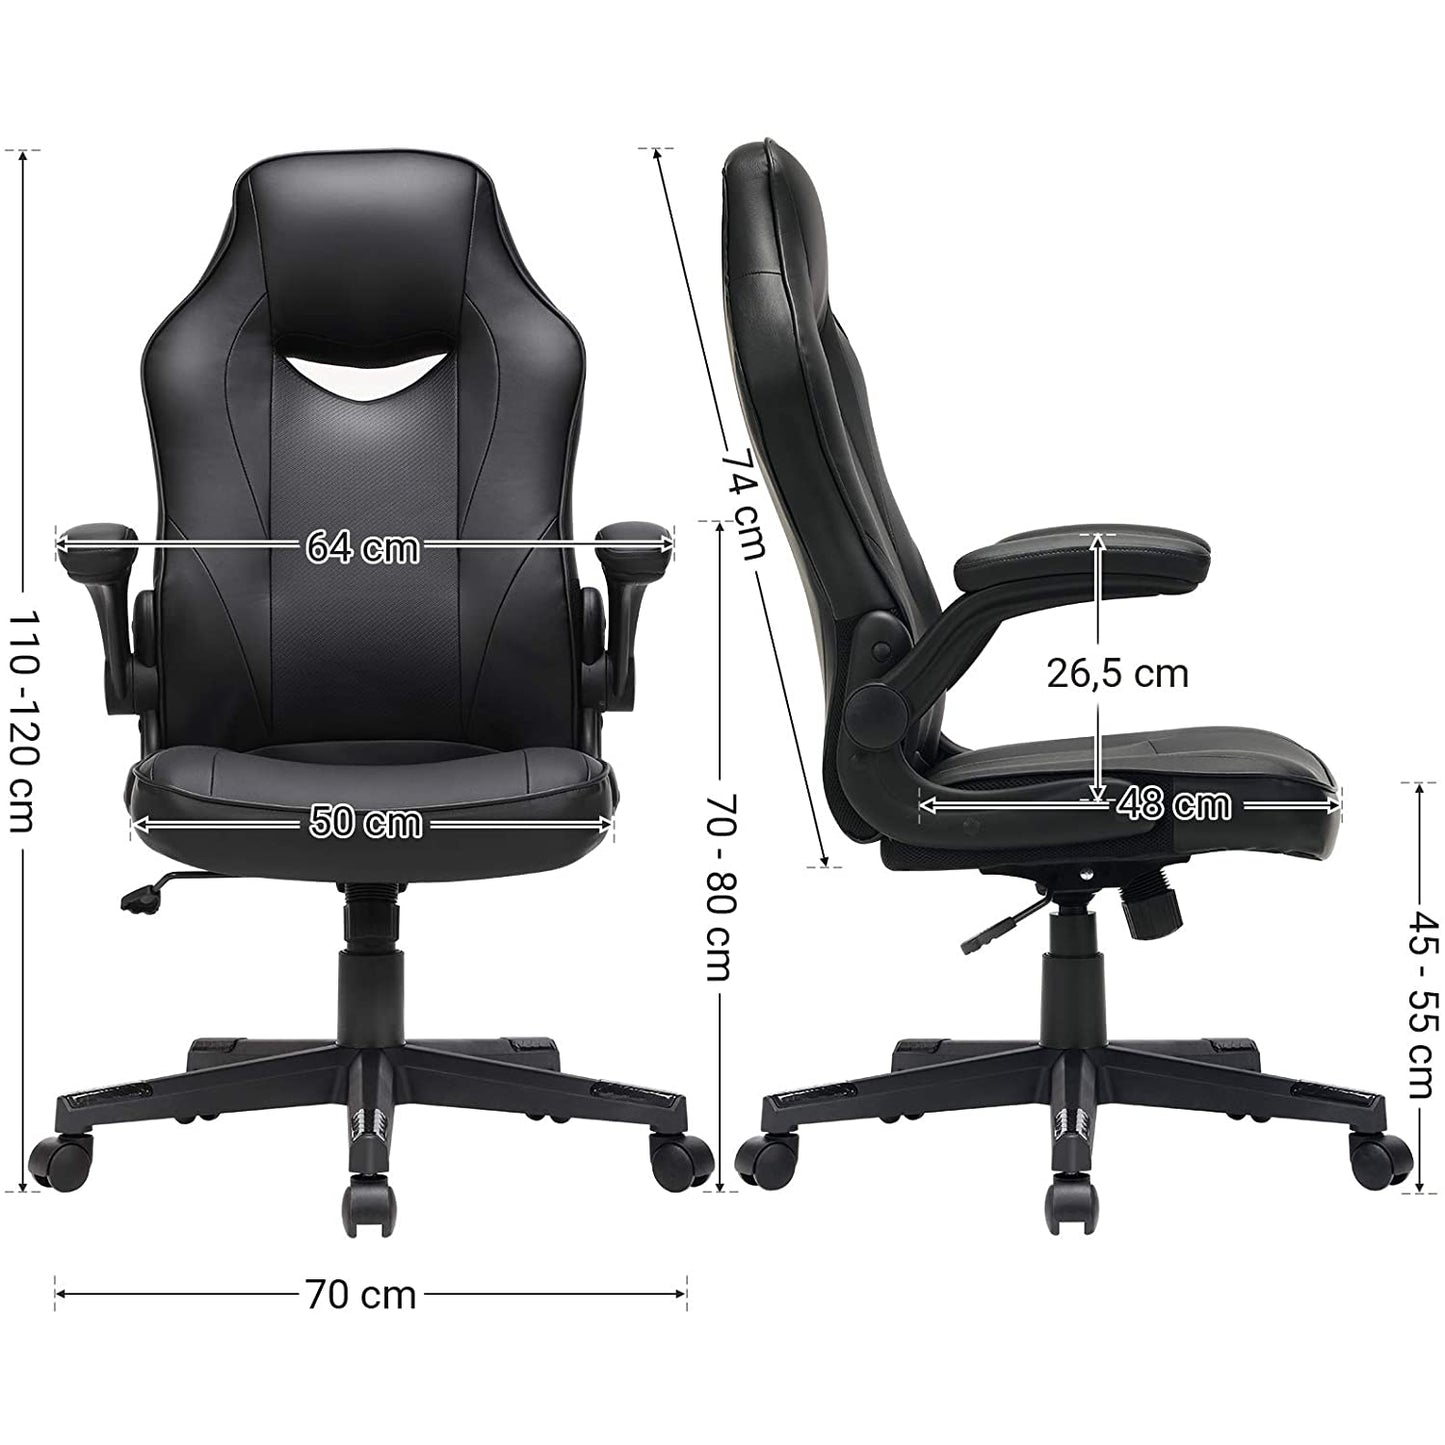 Chaise de bureau Nancy's Bathgate - Chaise de bureau ergonomique - Chaise de bureau pour adultes - Noir - 75 x 64 x (110-120) cm (L x L x H)